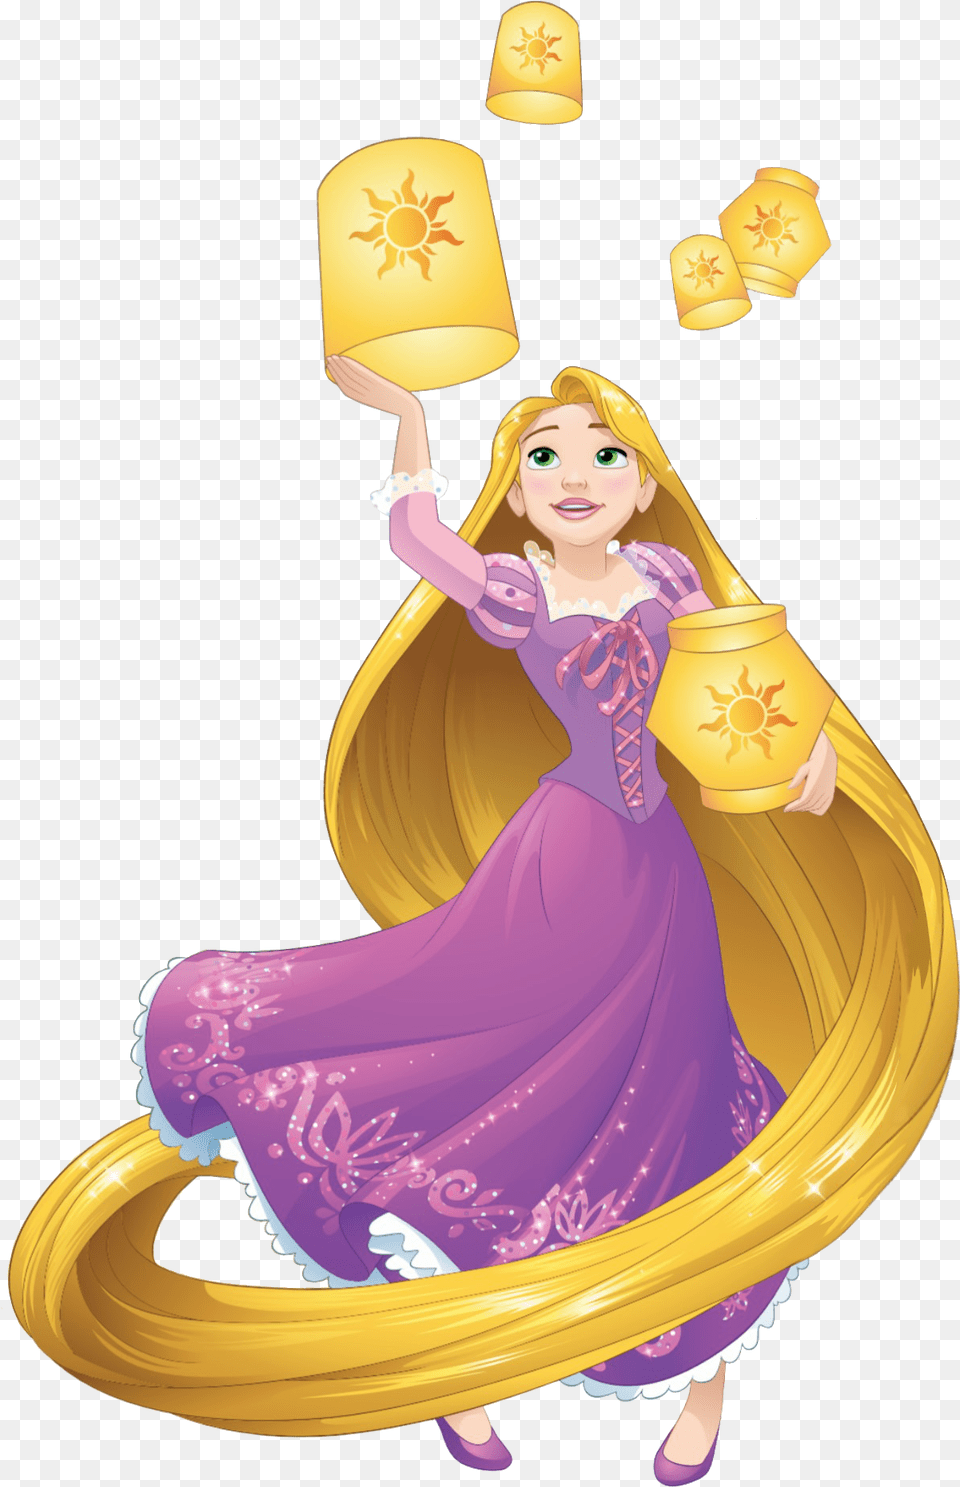 Rapunzel Clipart Transparent Background Disney Princess Rapunzel Hd, Lamp, Face, Head, Person Png